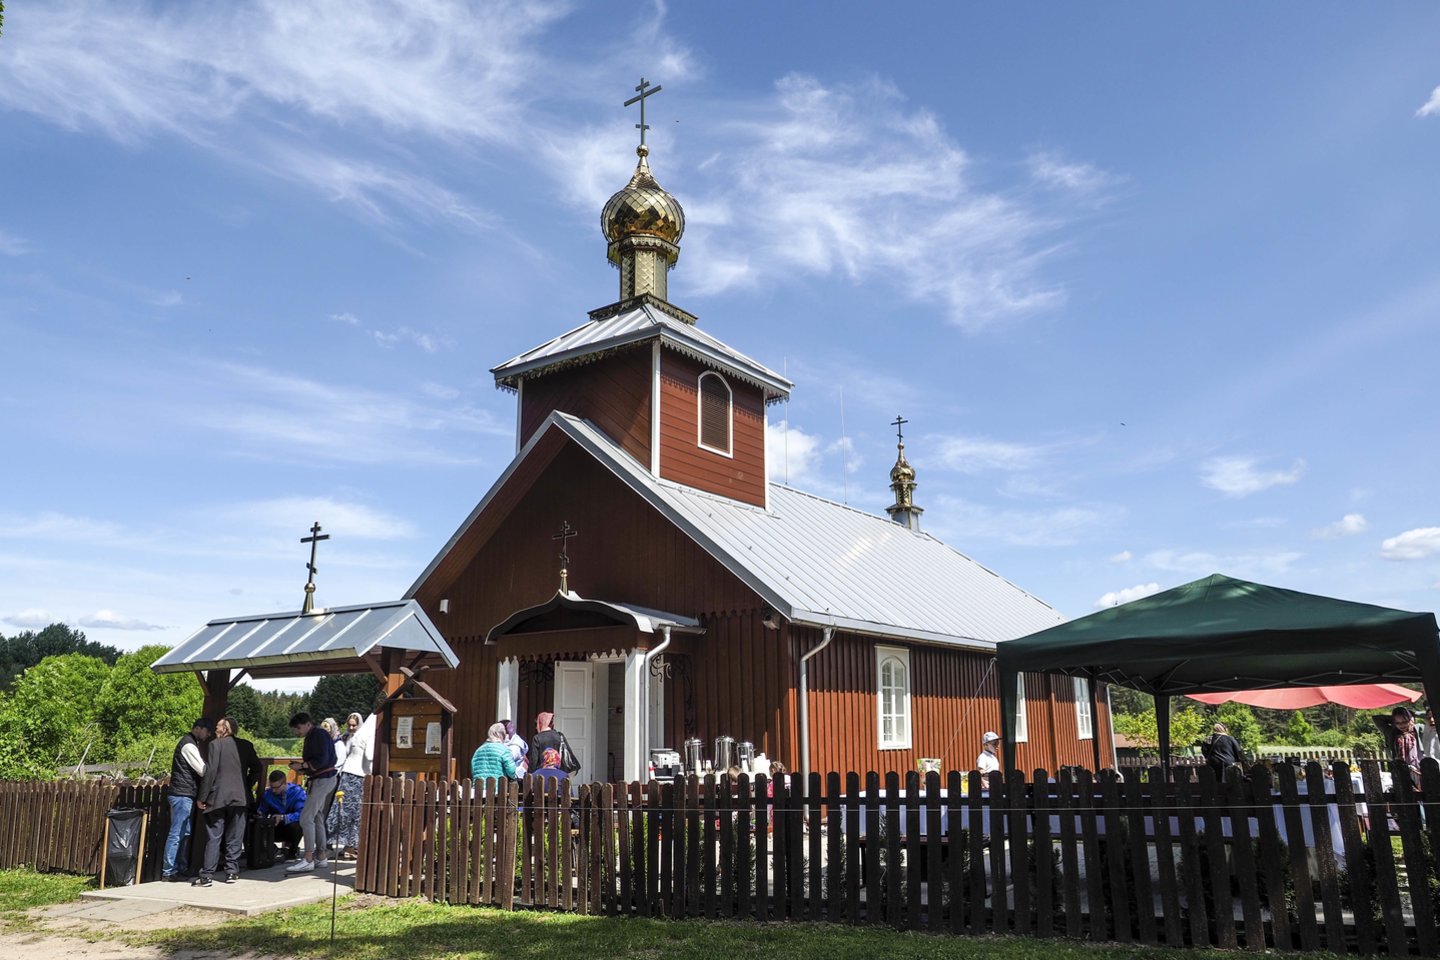 Nuošaliame ir tyliame Daniliškių kaime (Trakų r.) sekmadienį buvo šventė. Mat duris pagaliau atvėrė Švč. Trejybės sentikių cerkvė.<br>V. Ščiavinsko nuotr.